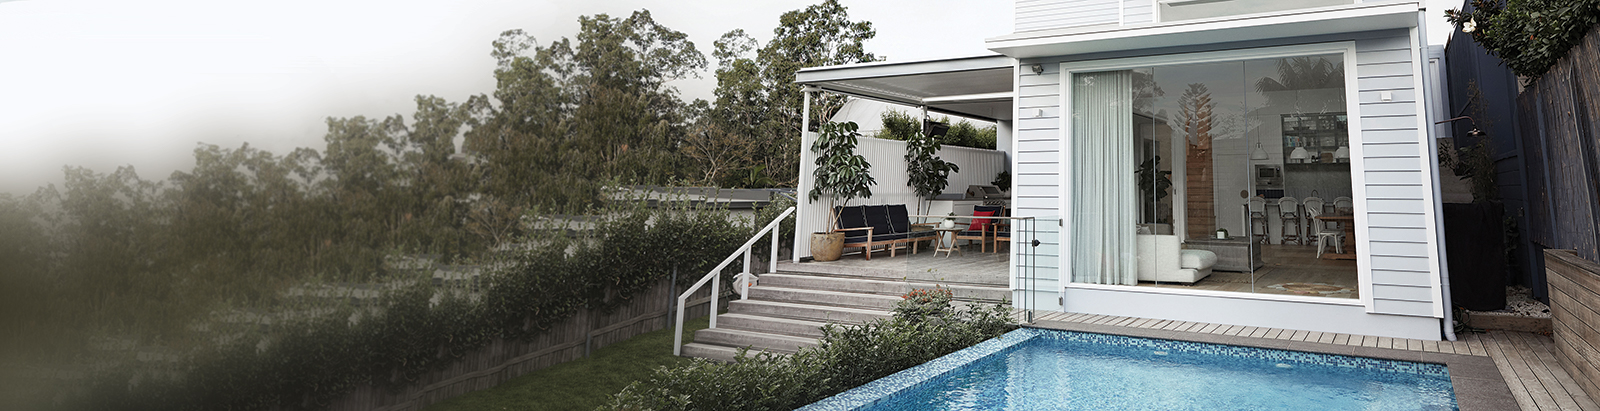 Weatherboard house with backyard pool